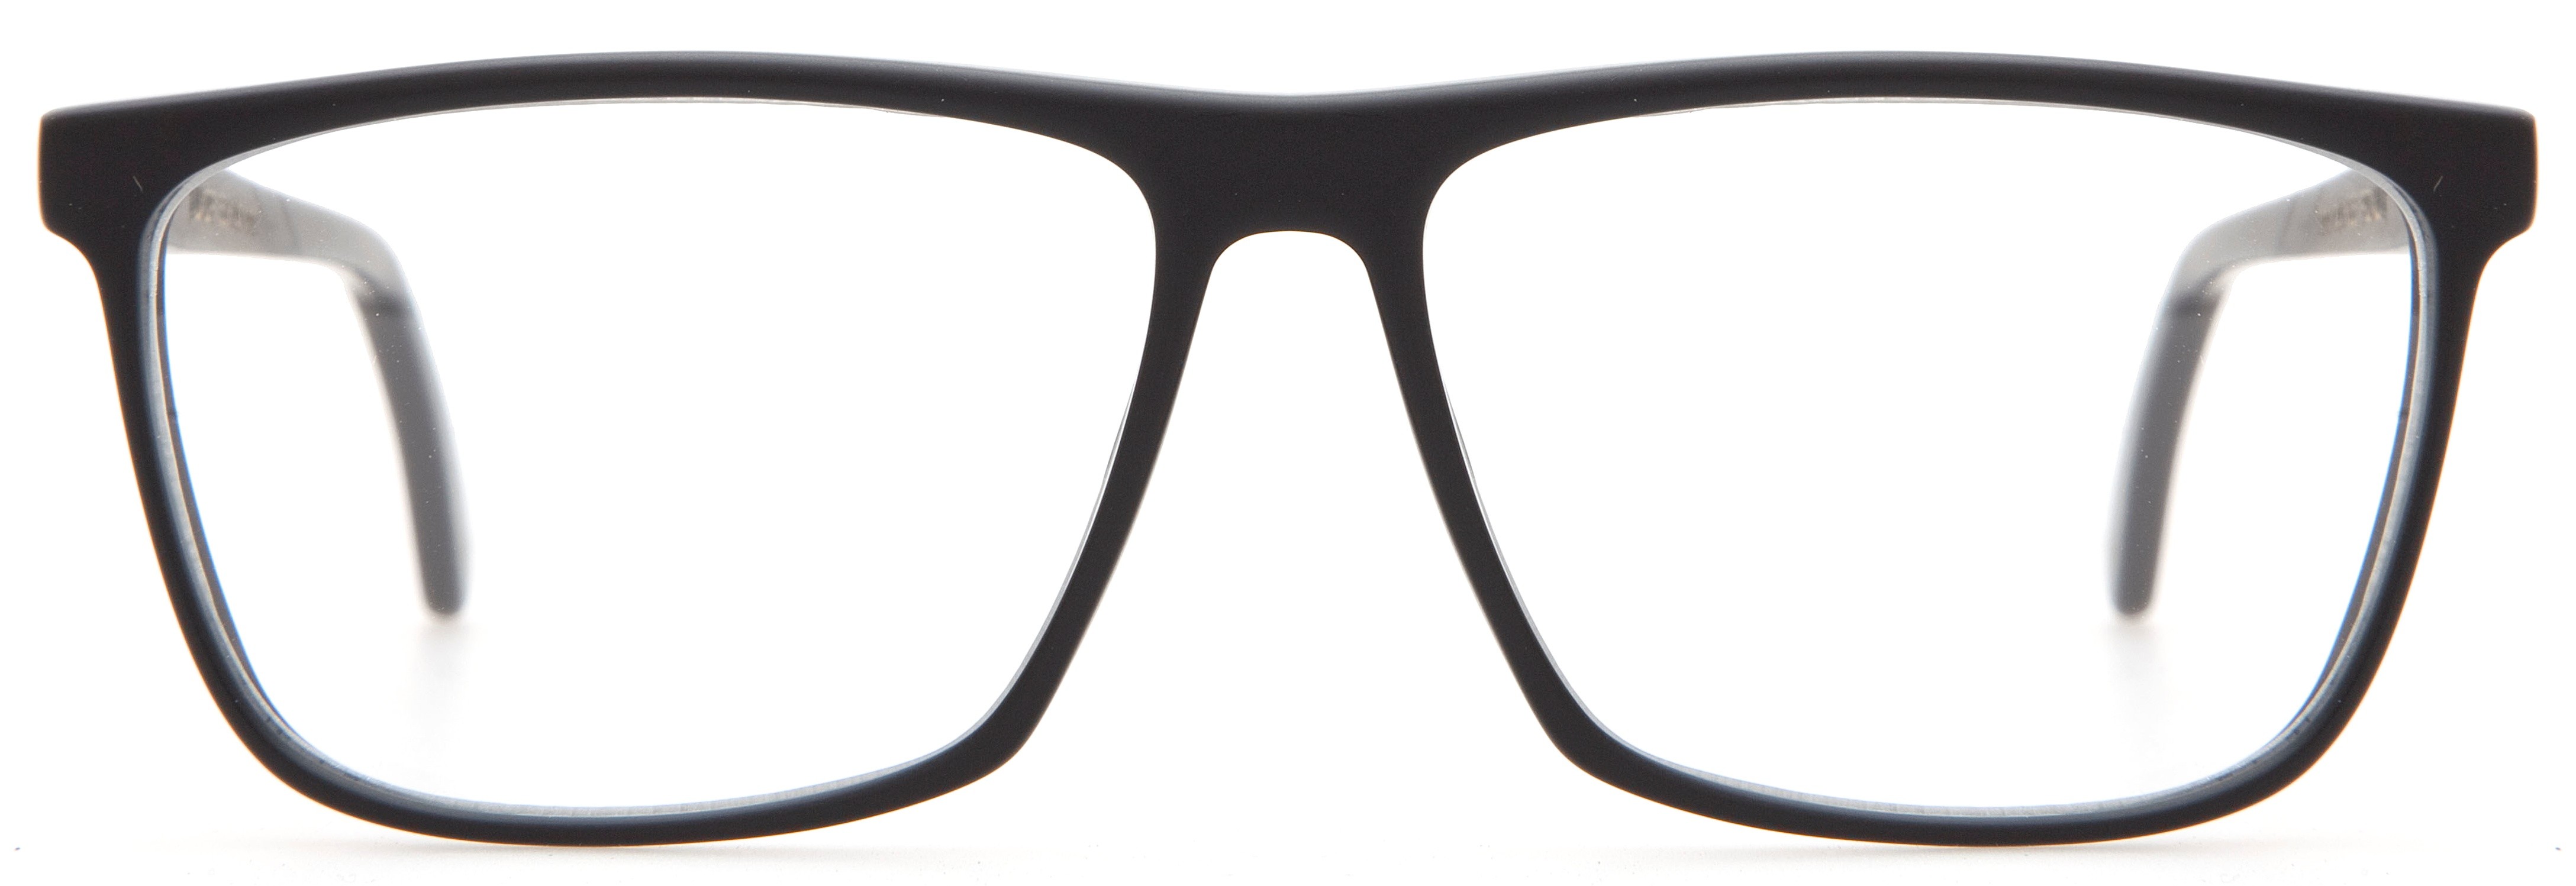 Glasses #8